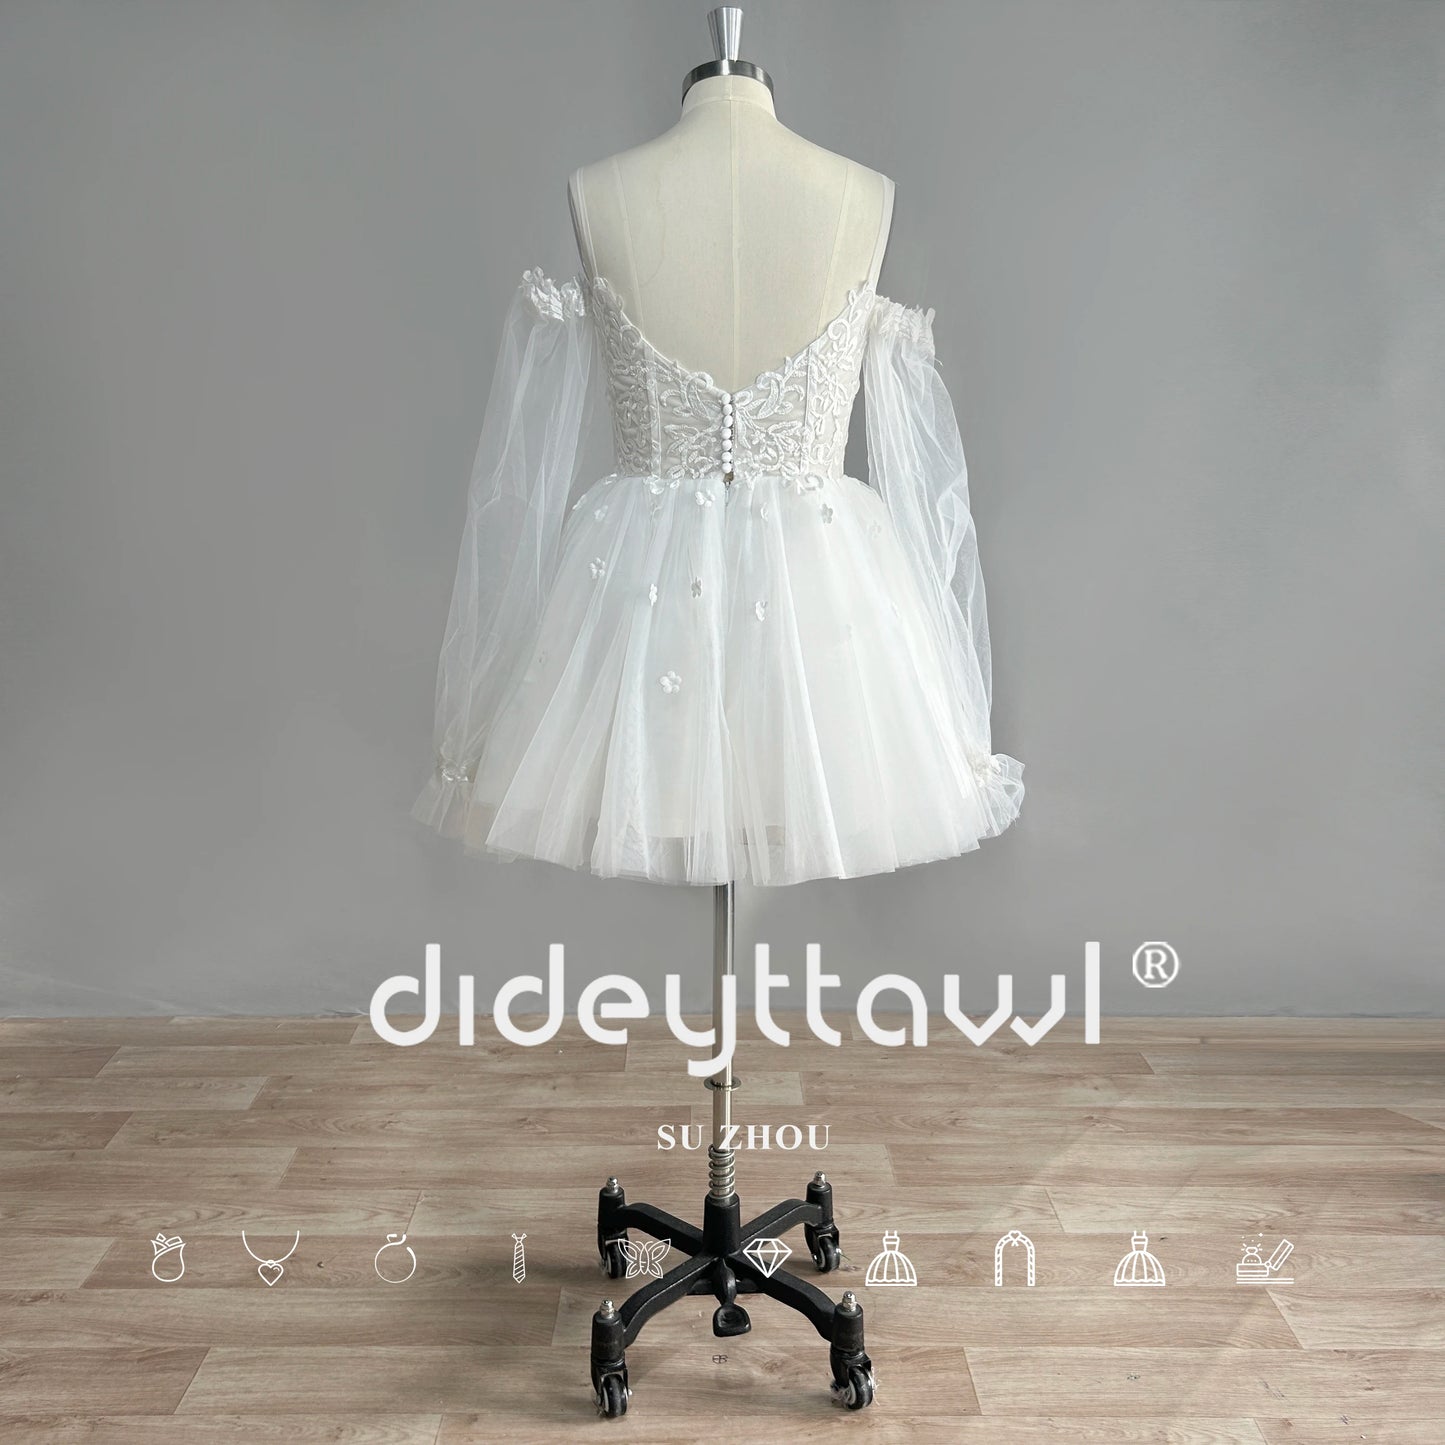 Dideyttawl sayang lengan panjang tulle gaun pengantin pendek mini panjang dari bahu gaun pengantin gambar nyata